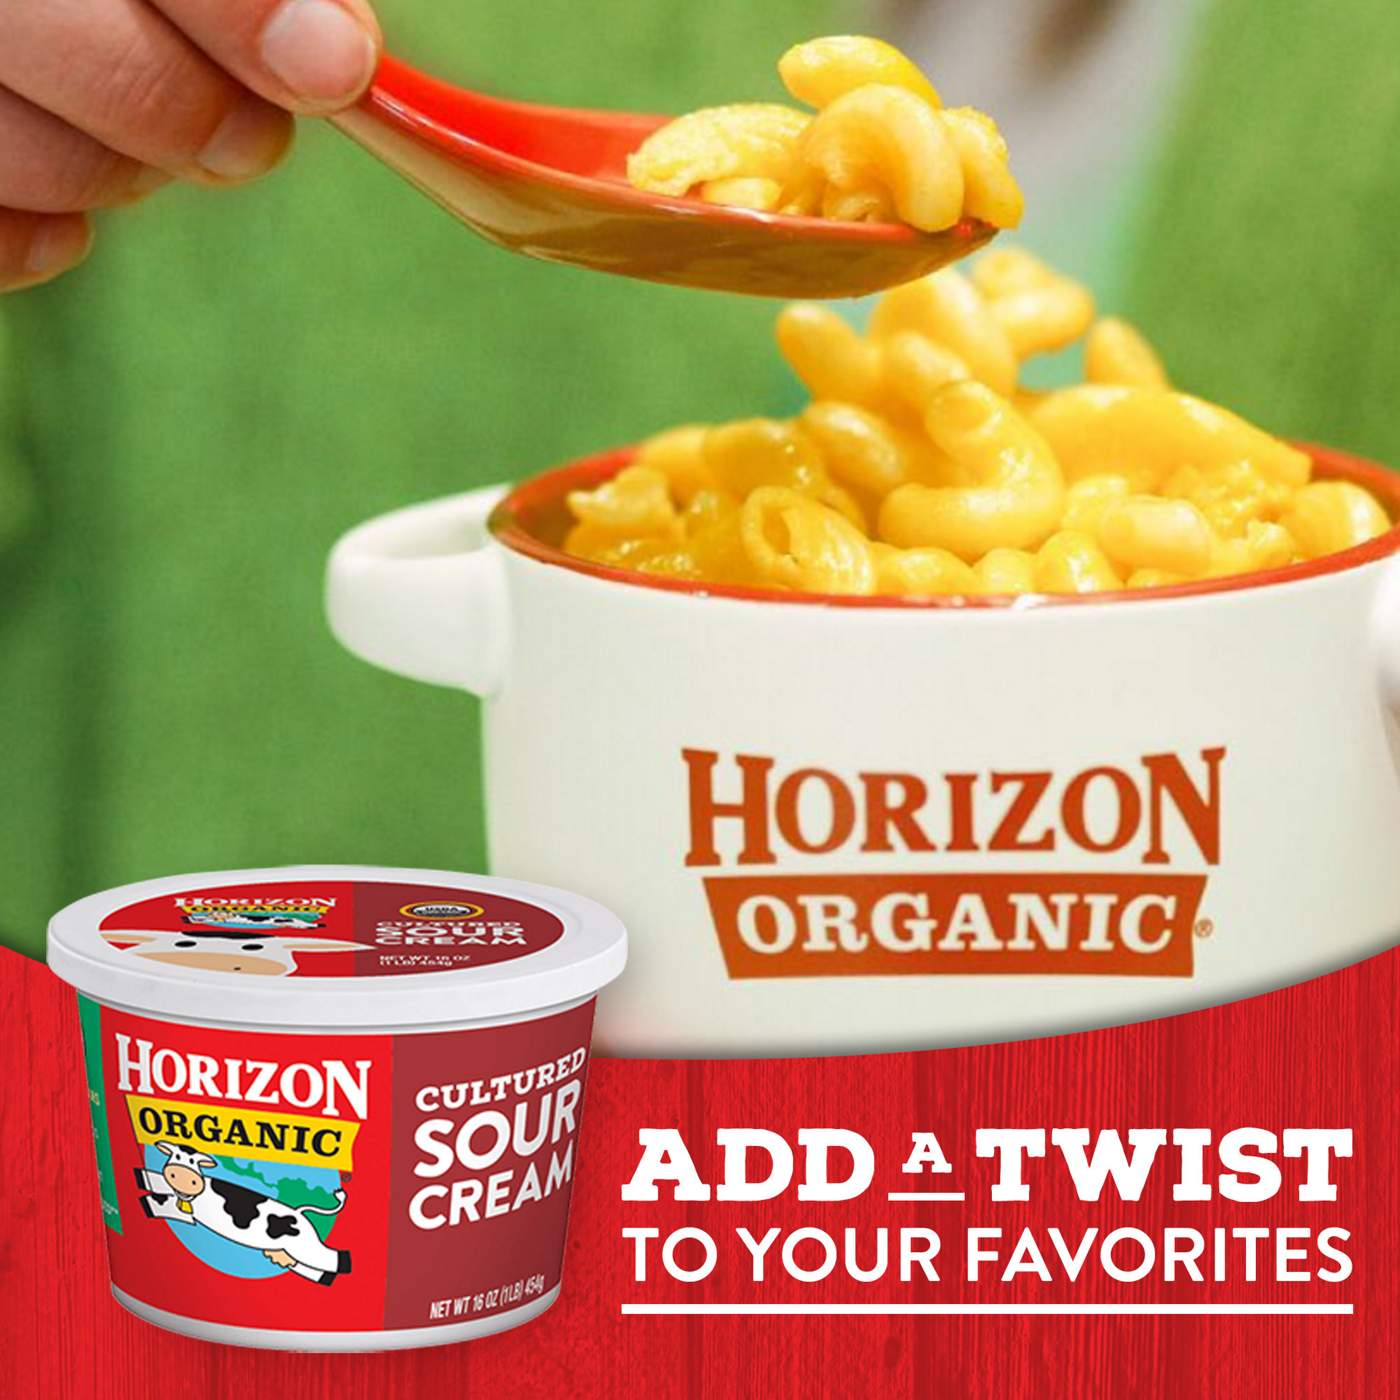 Horizon Organic Cultured Sour Cream; image 4 of 8